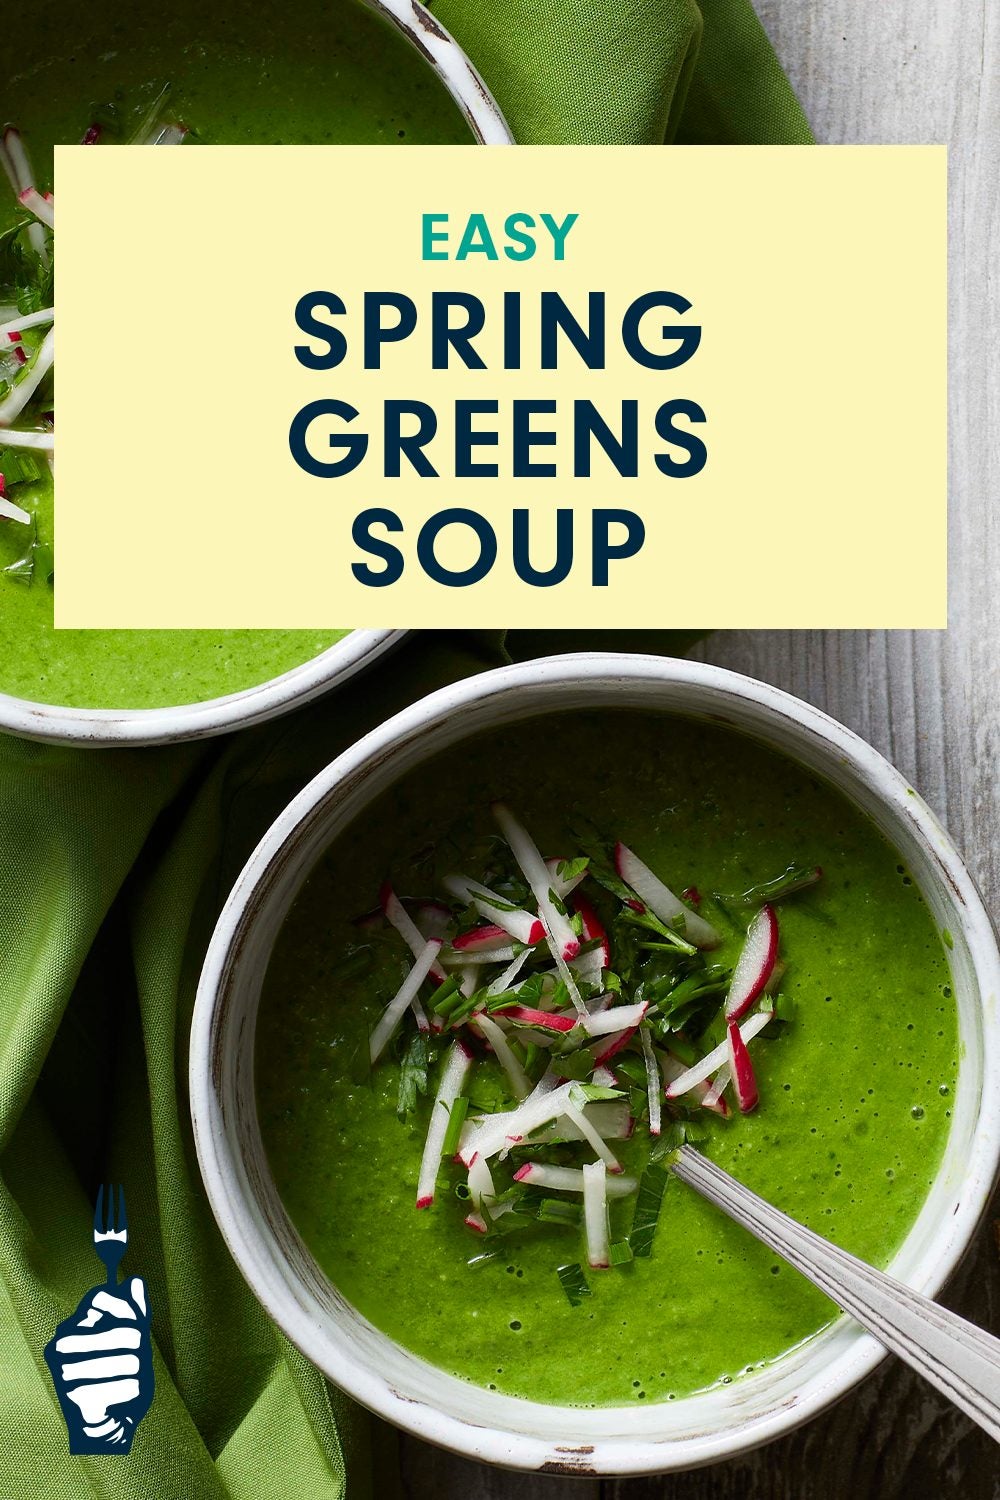 Every-Season Greenaholic Soup